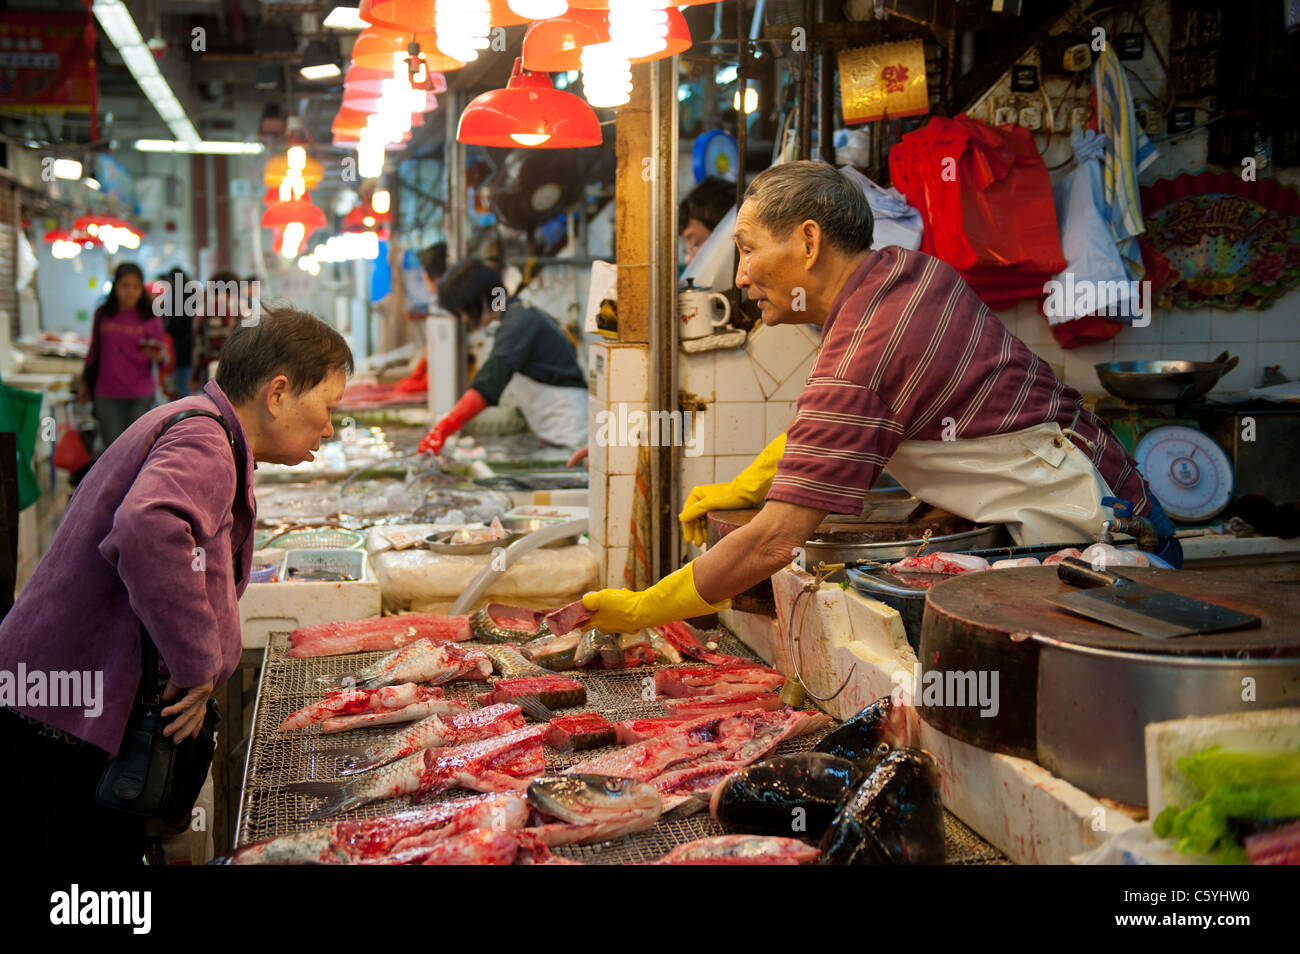 Les poissonniers échoppe de marché dans la région de Tung Choi Street Mong Kok, Kowloon, Hong Kong Banque D'Images